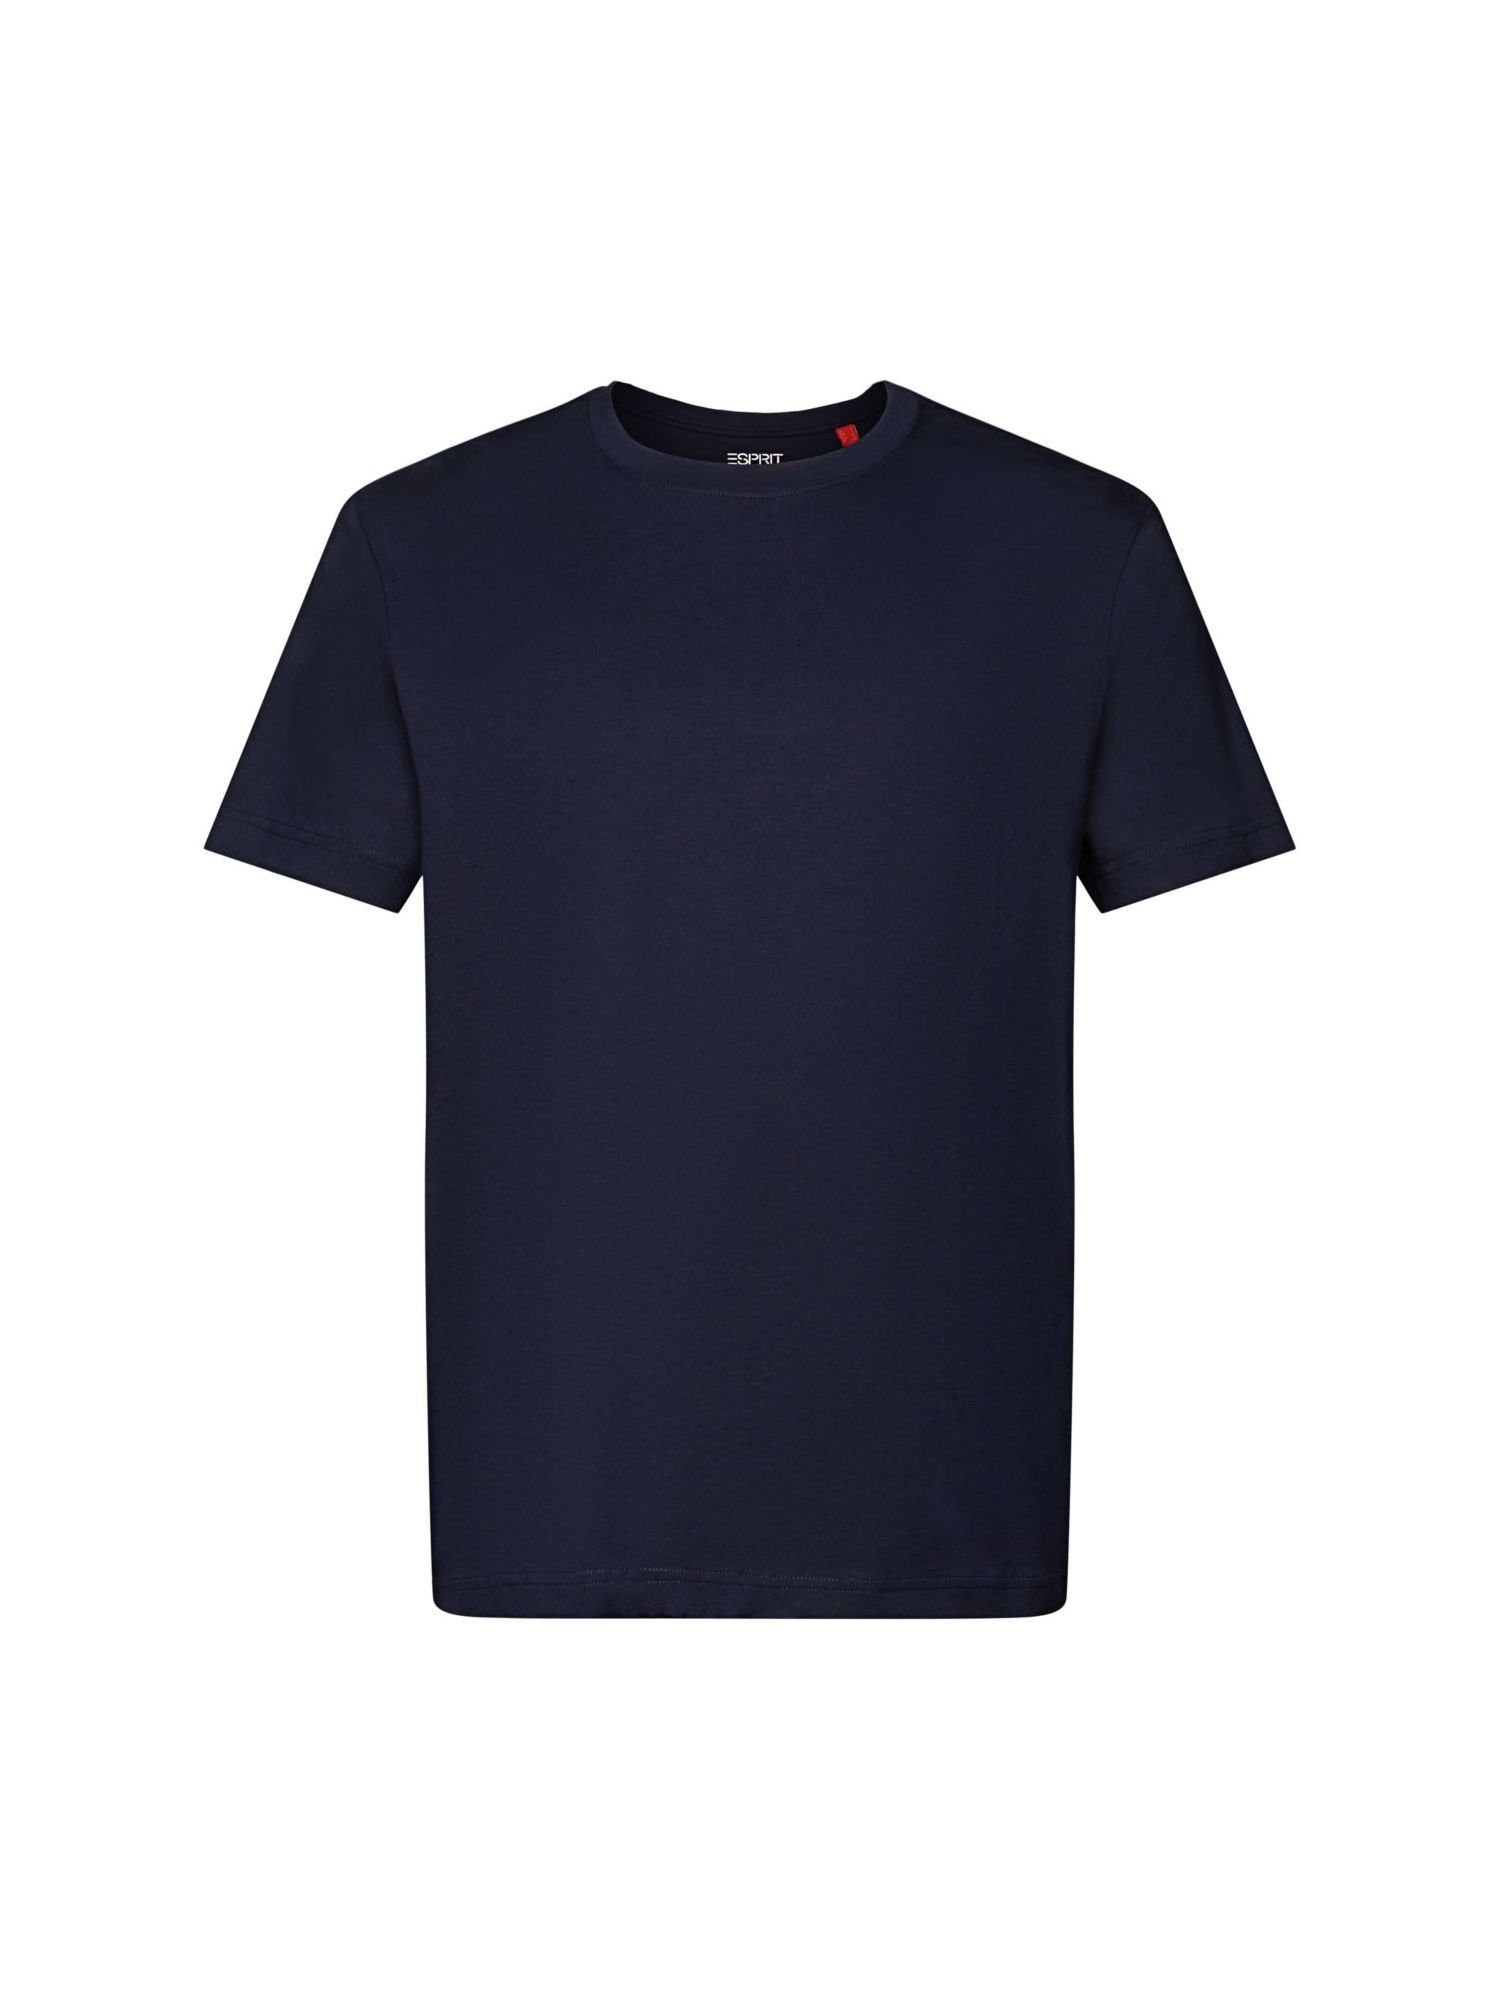 billig erwerben Esprit Collection NAVY Pima-Baumwolljersey aus Rundhals-T-Shirt T-Shirt (1-tlg)